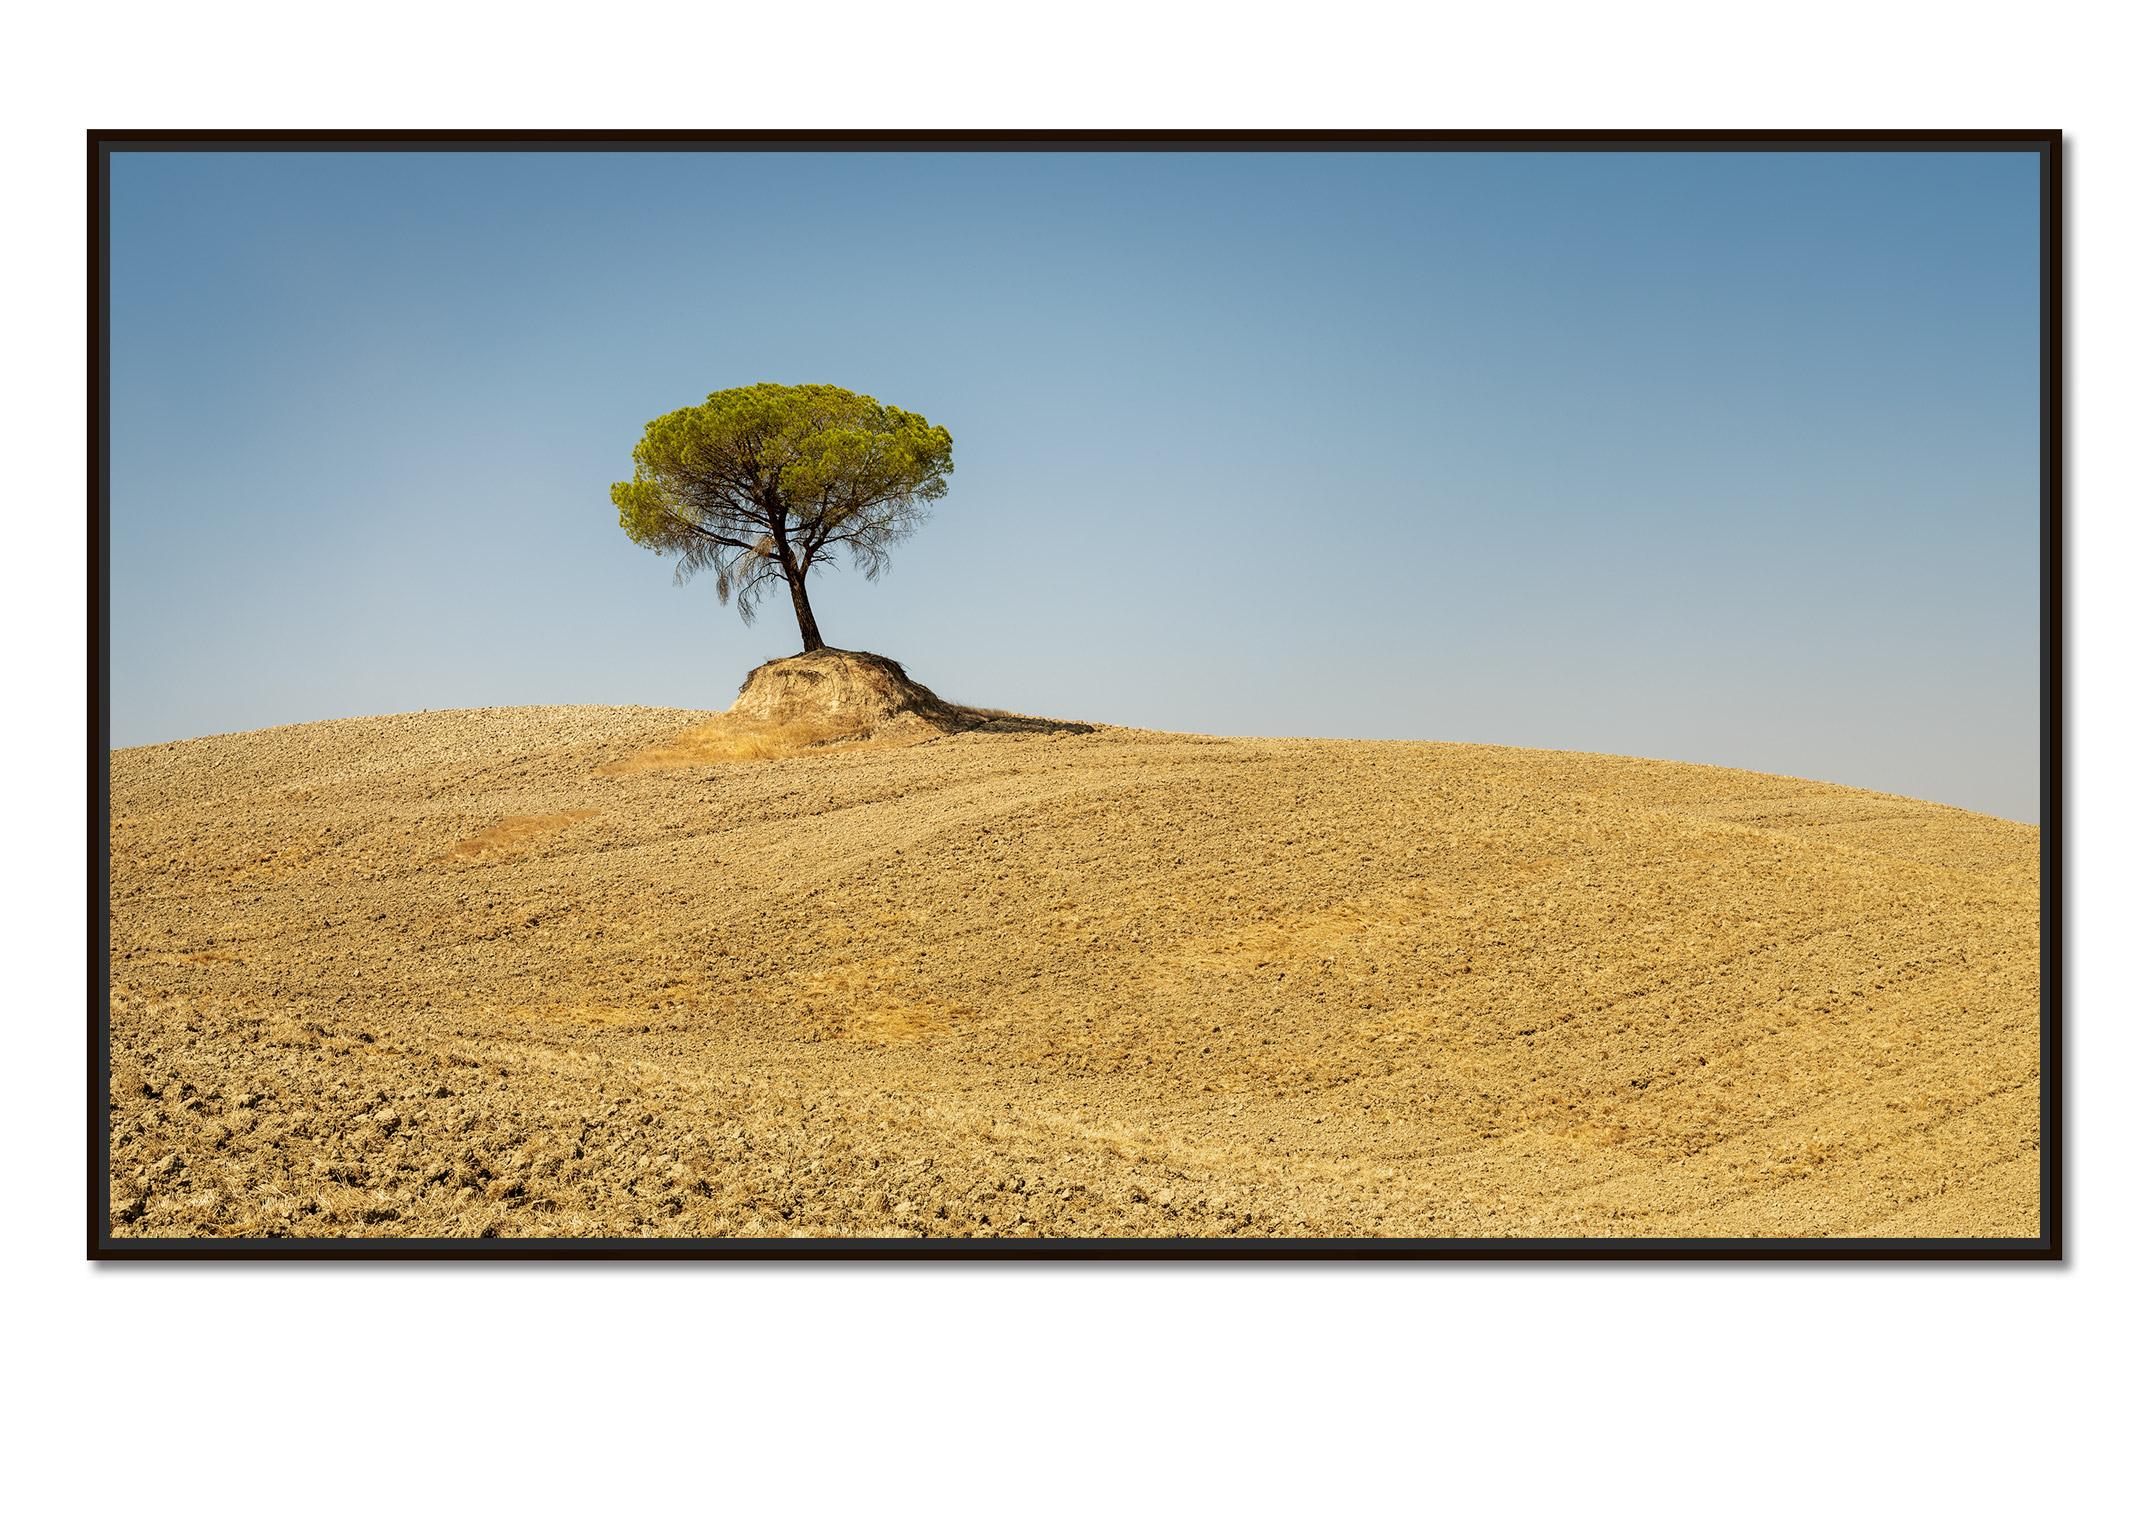 Italienische Steinkiefer, Baum, Toskana, Italien, Farbkunstfotografie, Landschaft – Photograph von Gerald Berghammer